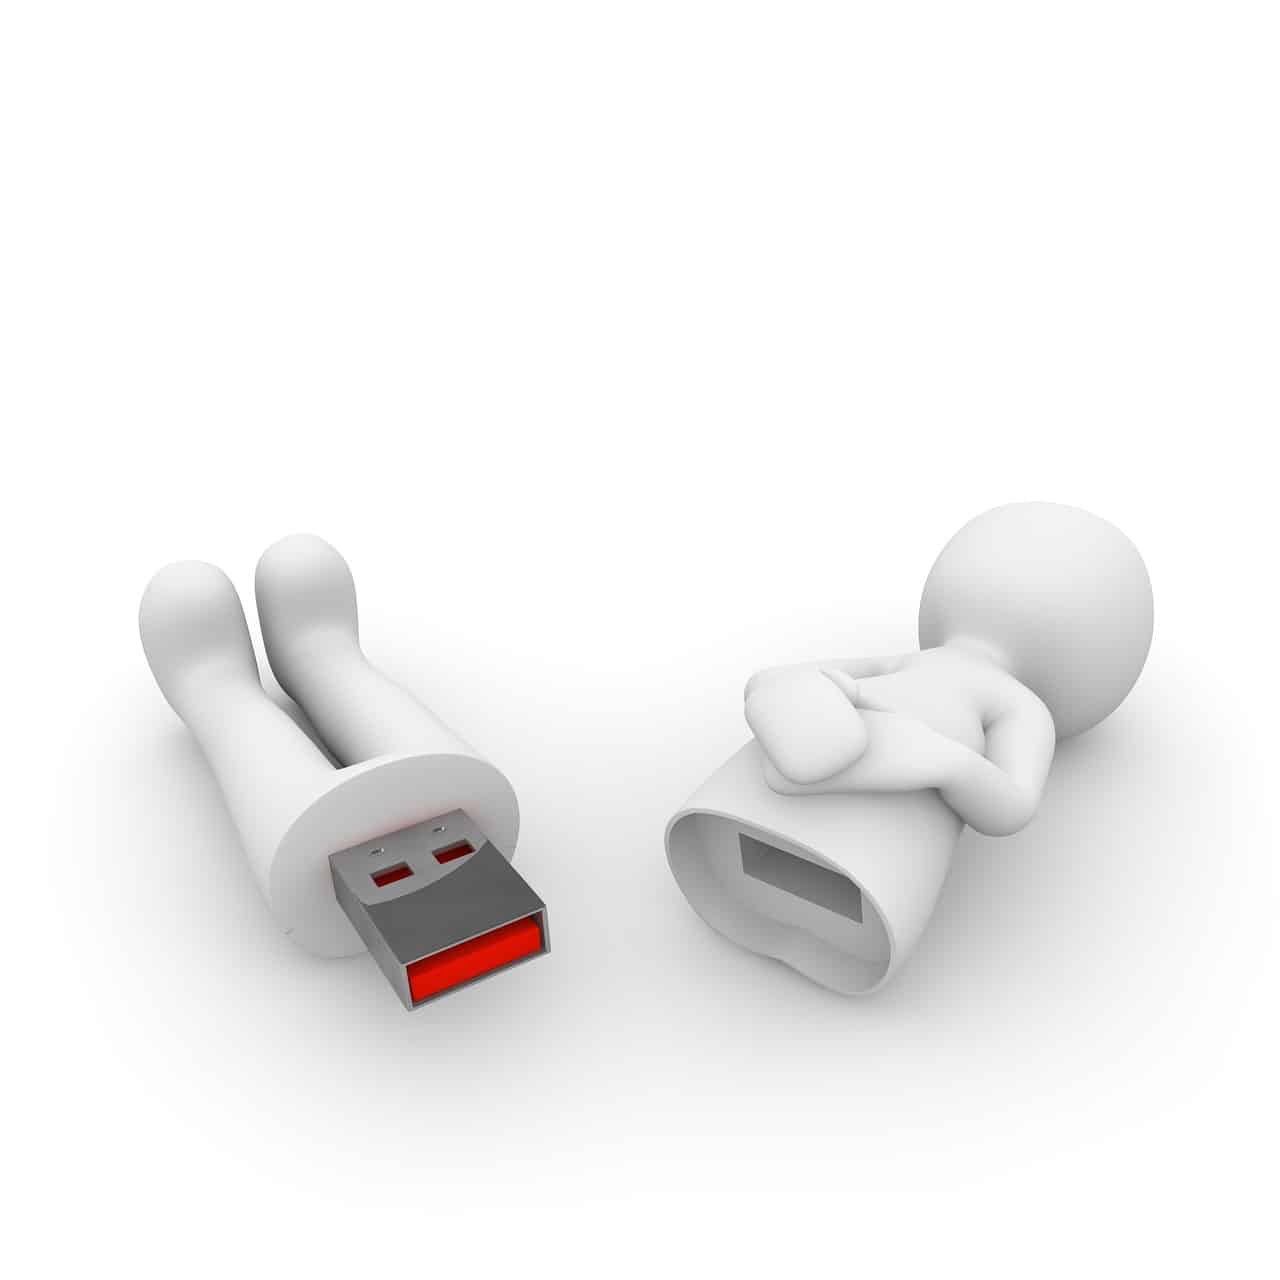 Clipart eines USB Sticks in Form einer Figur geteilt